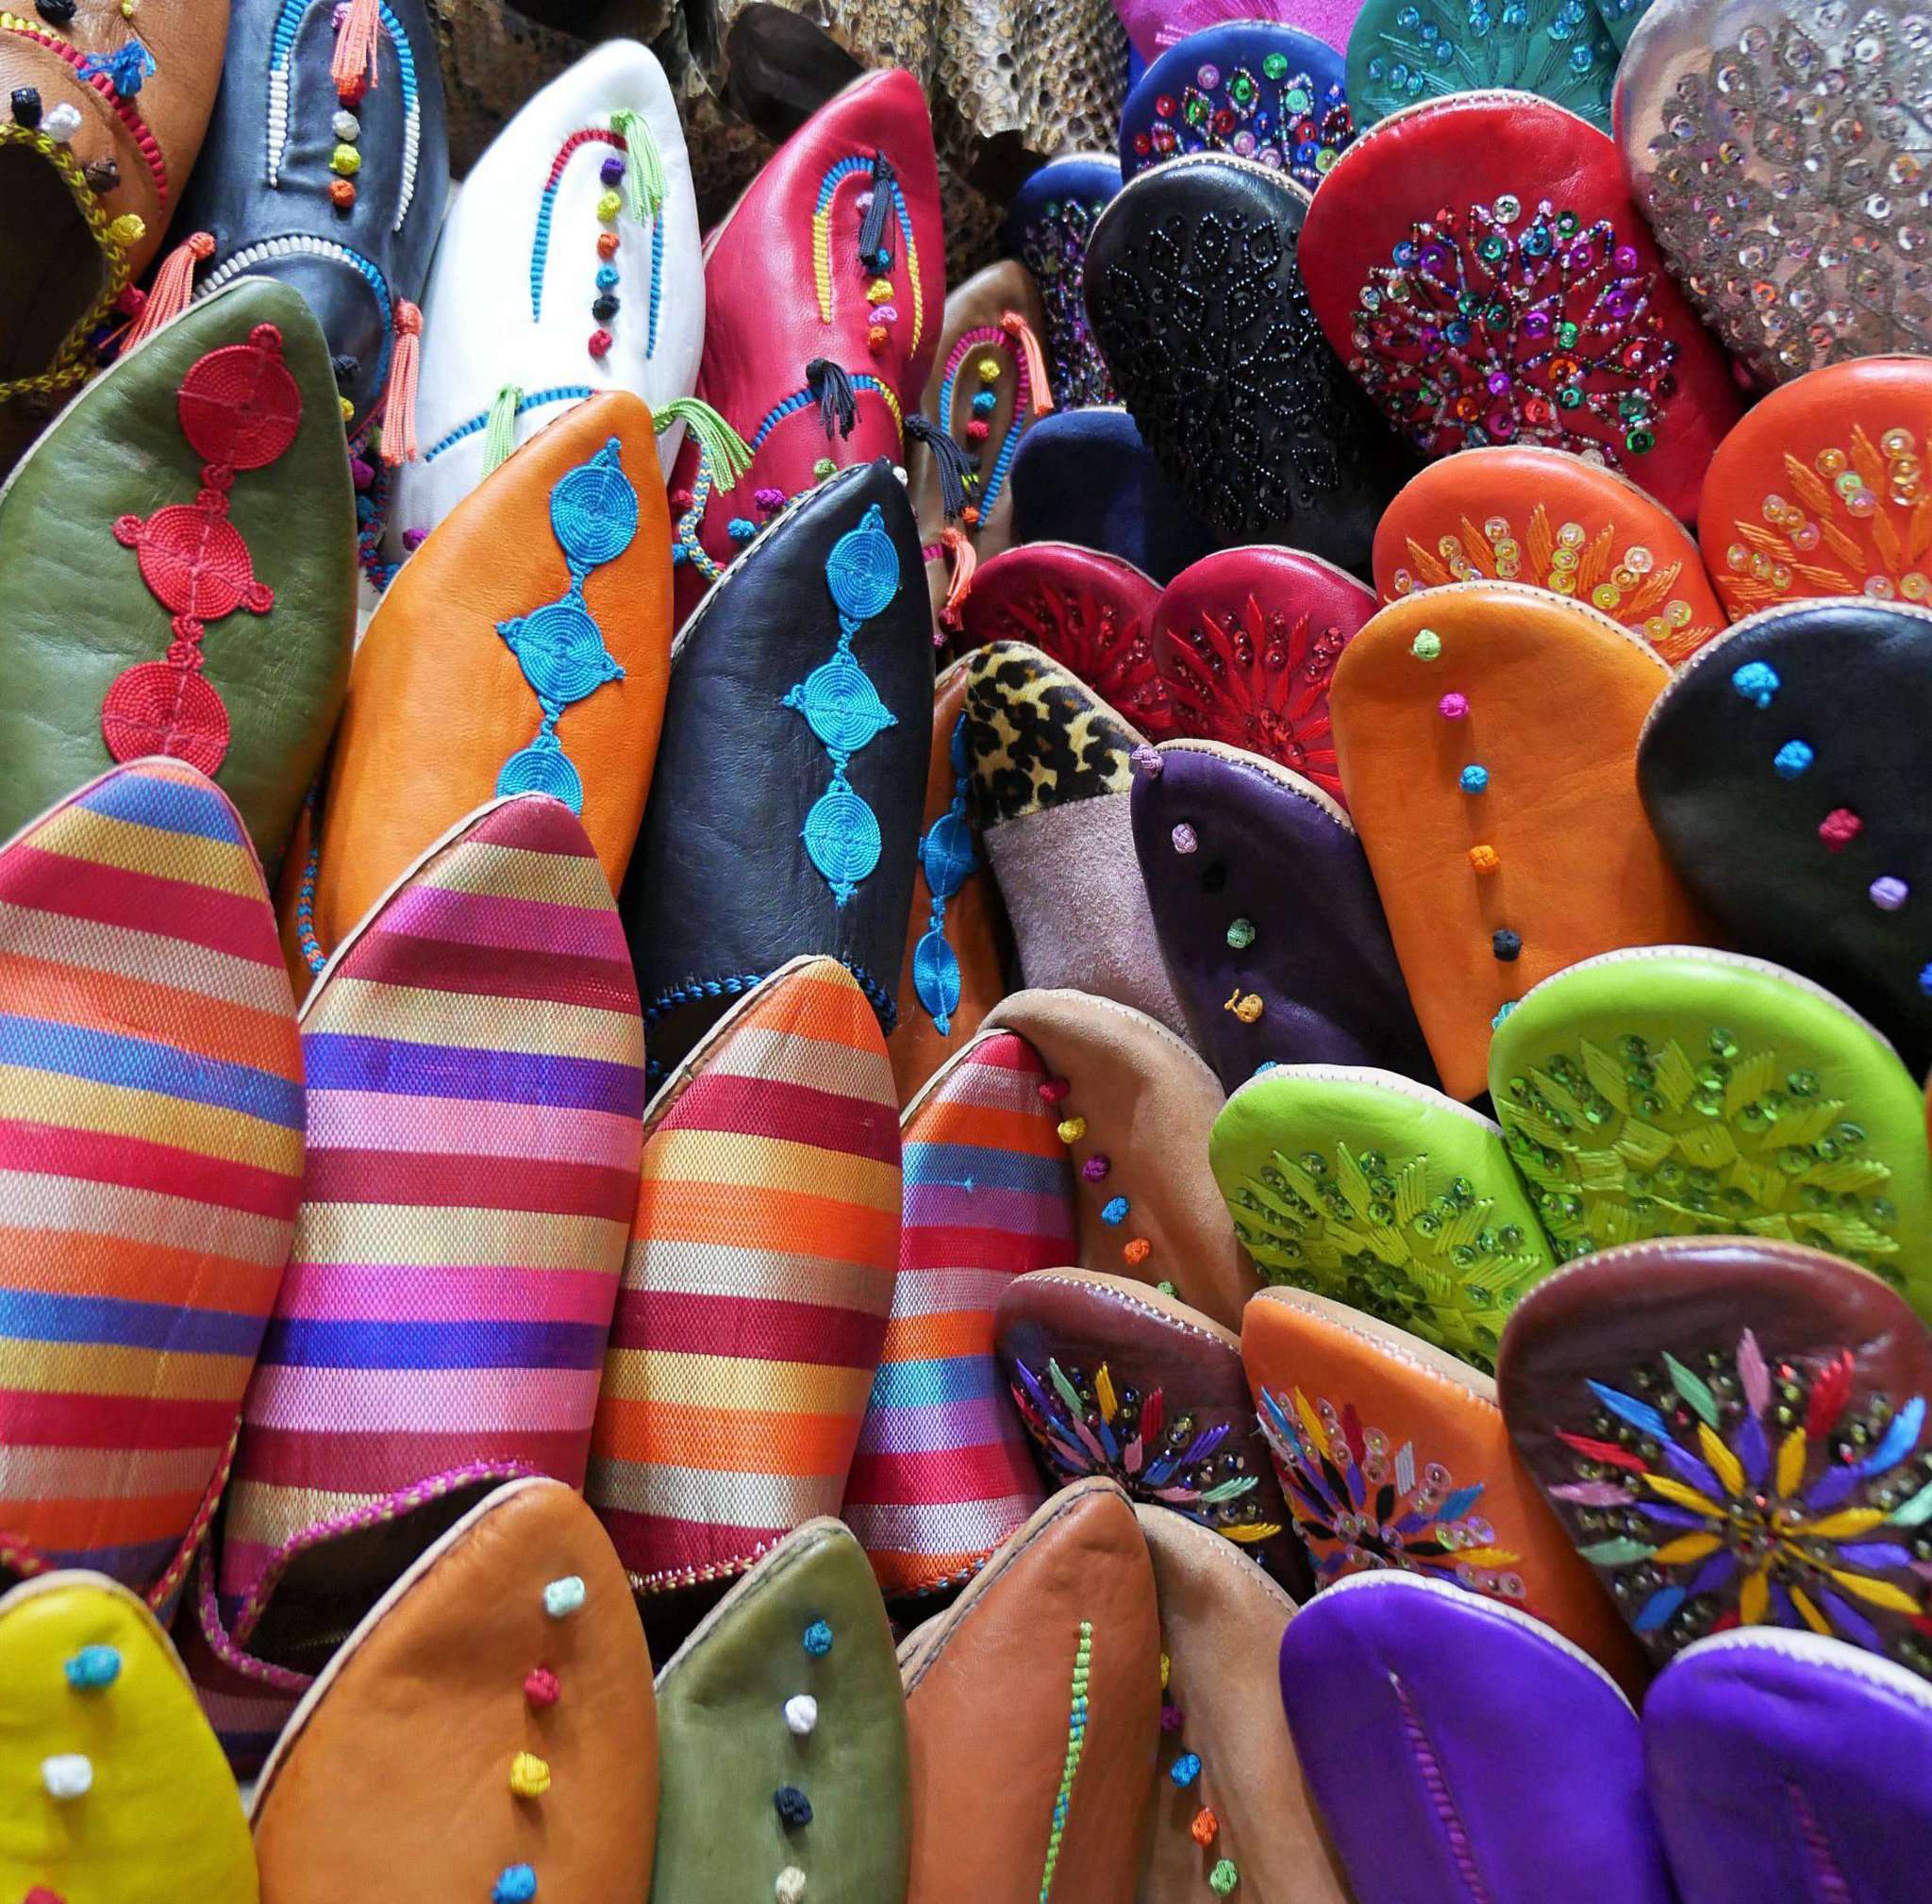 Lena Gehring hielt die bunte Schuhparade in Marrakesch fest.